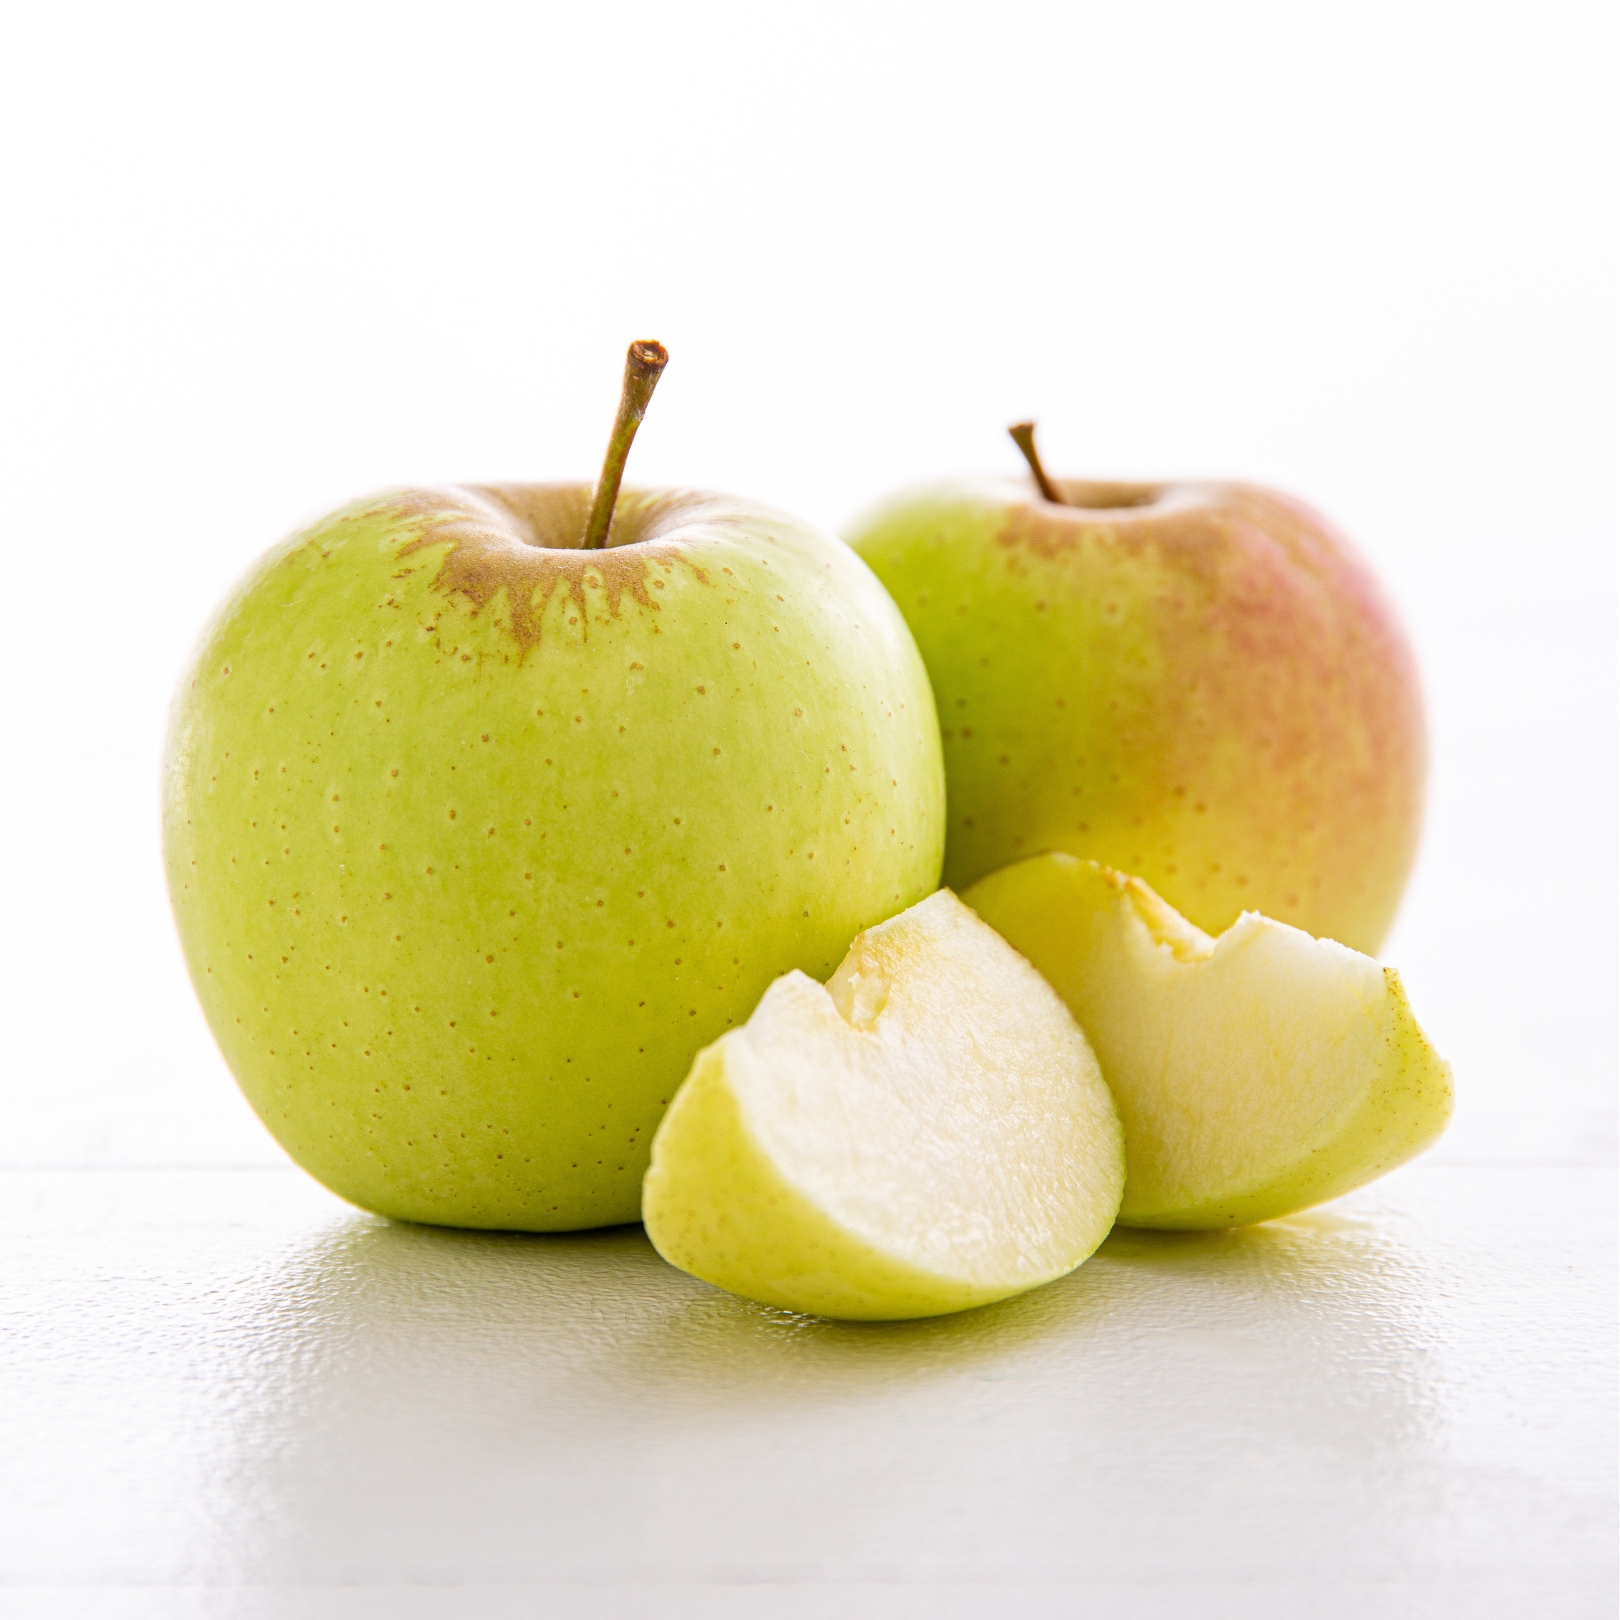 Buy Apples - Golden Delicious Online NZ